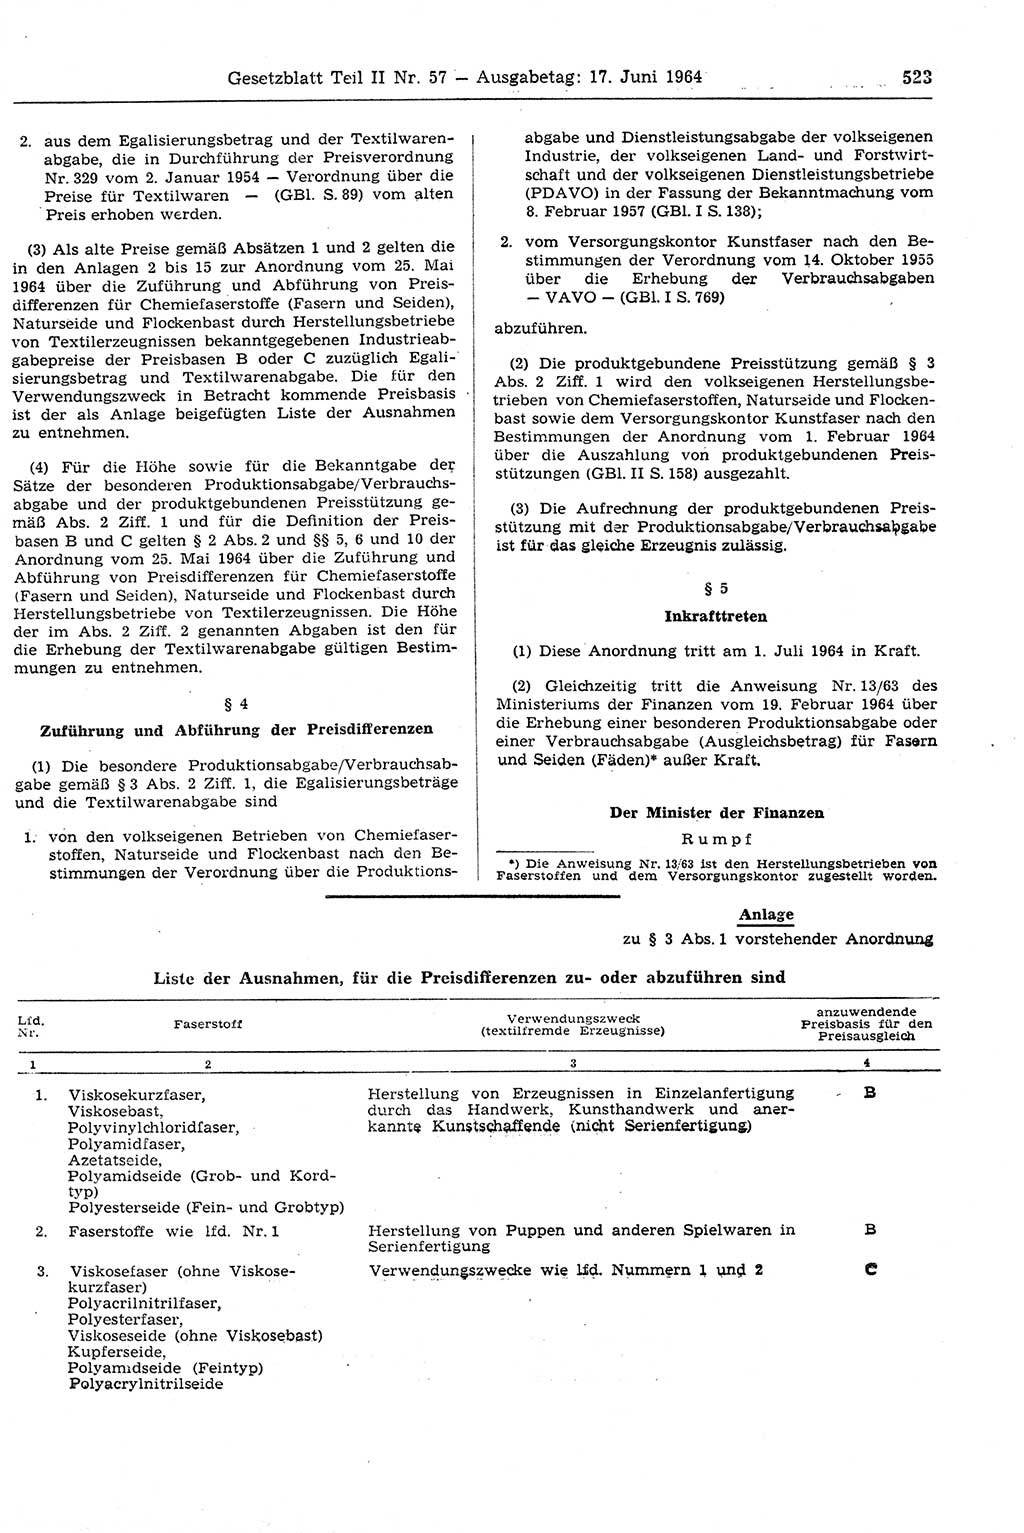 Gesetzblatt (GBl.) der Deutschen Demokratischen Republik (DDR) Teil ⅠⅠ 1964, Seite 523 (GBl. DDR ⅠⅠ 1964, S. 523)